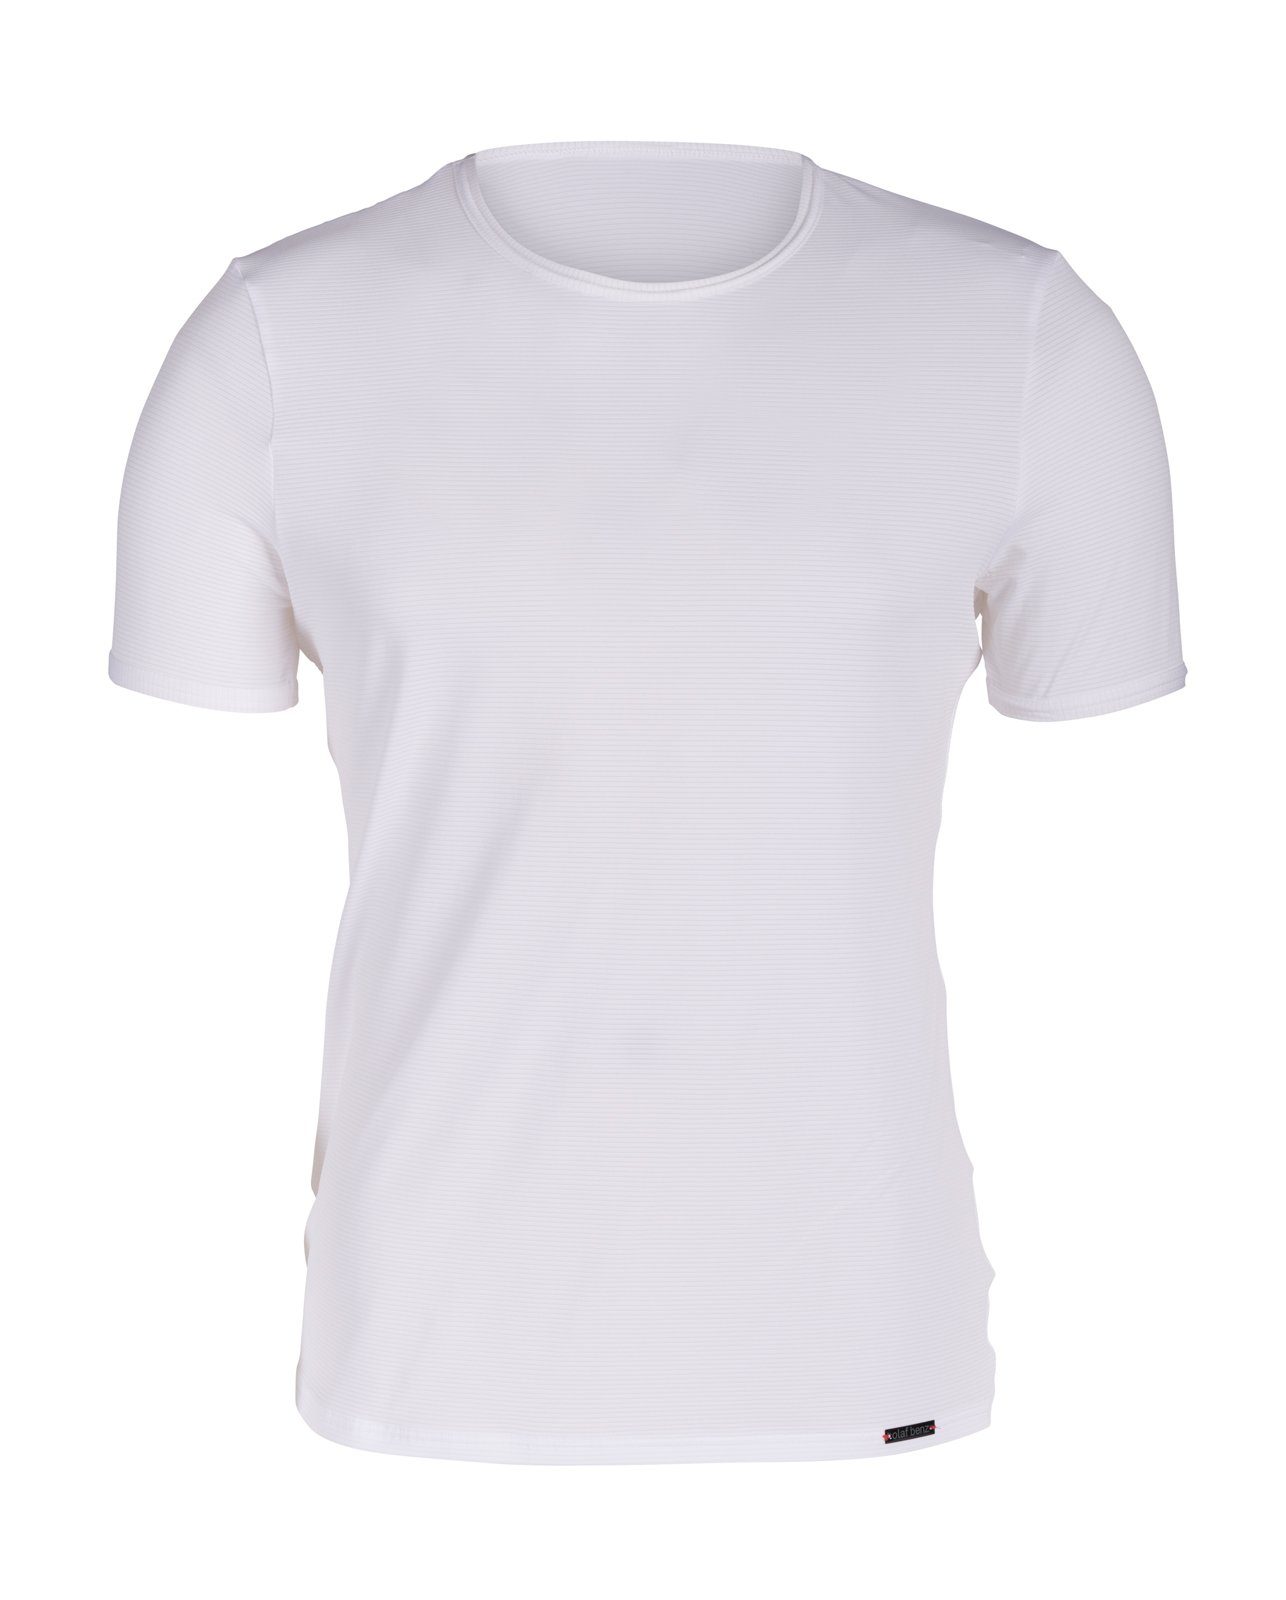 Olaf Benz Unterziehshirt T-Shirt Doppelpack RED 1201 (Packung, 2er-Pack) Weiß